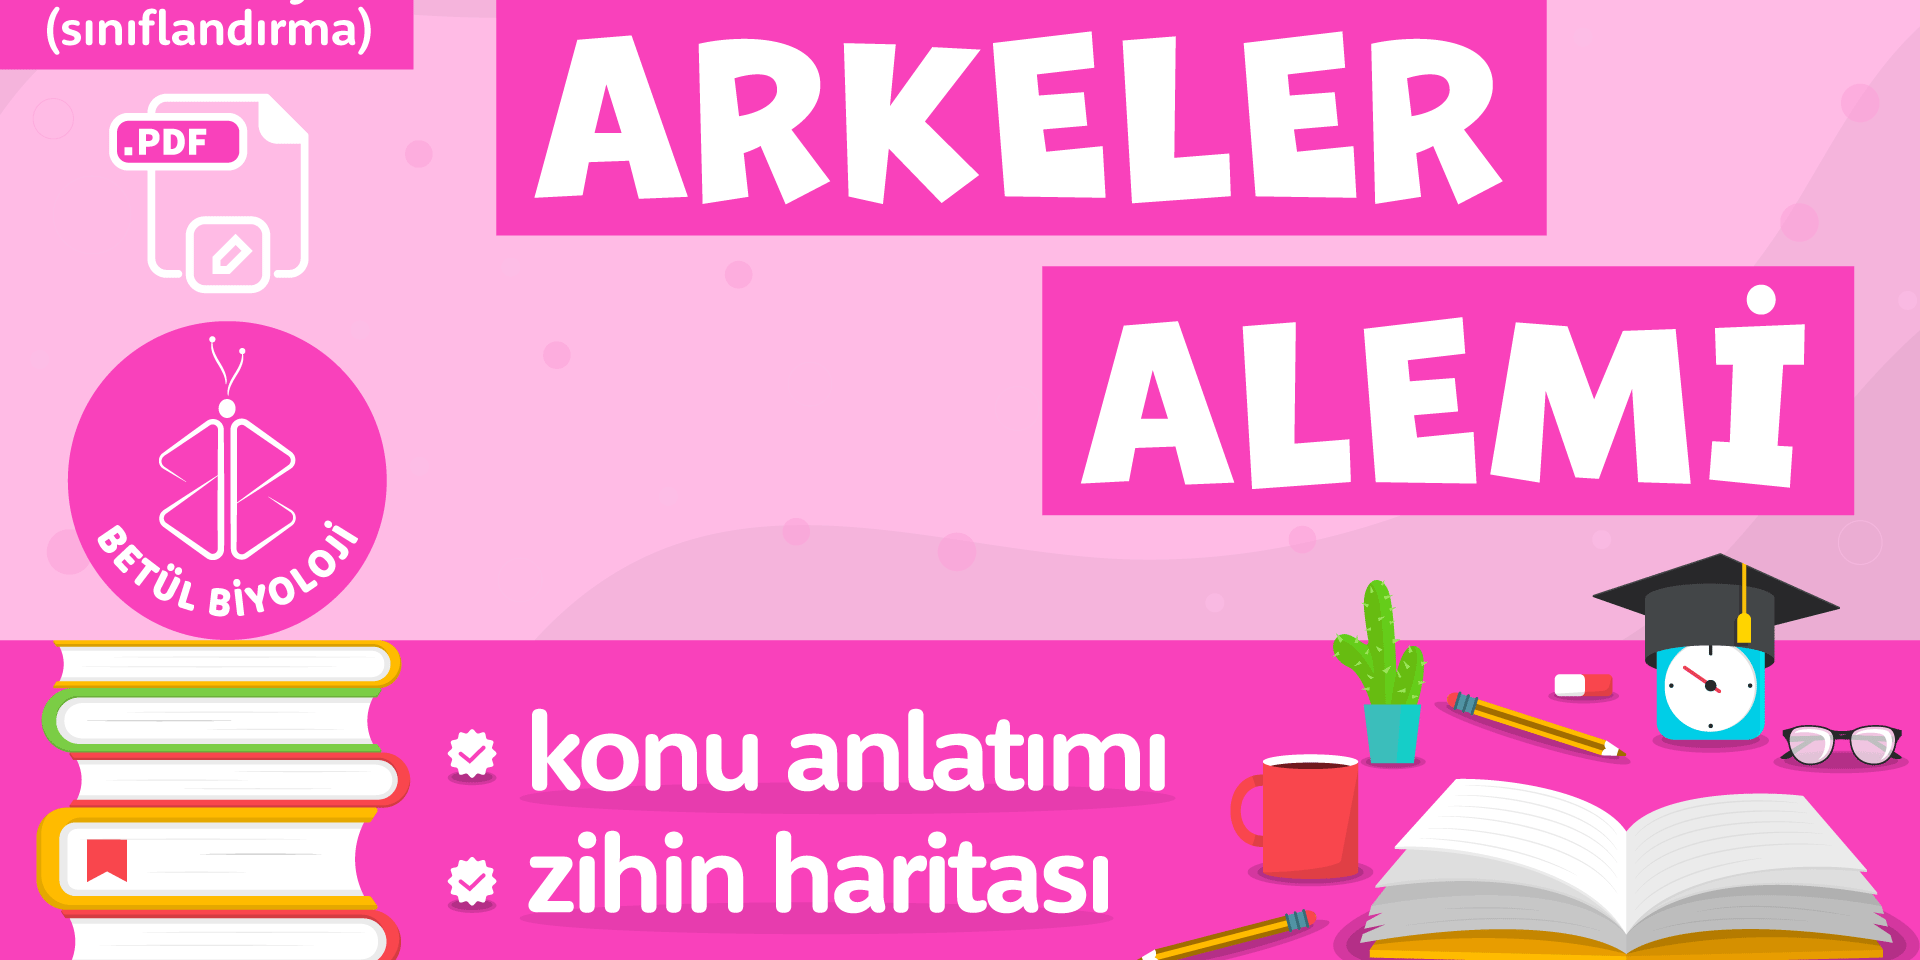 arkeler_alemi